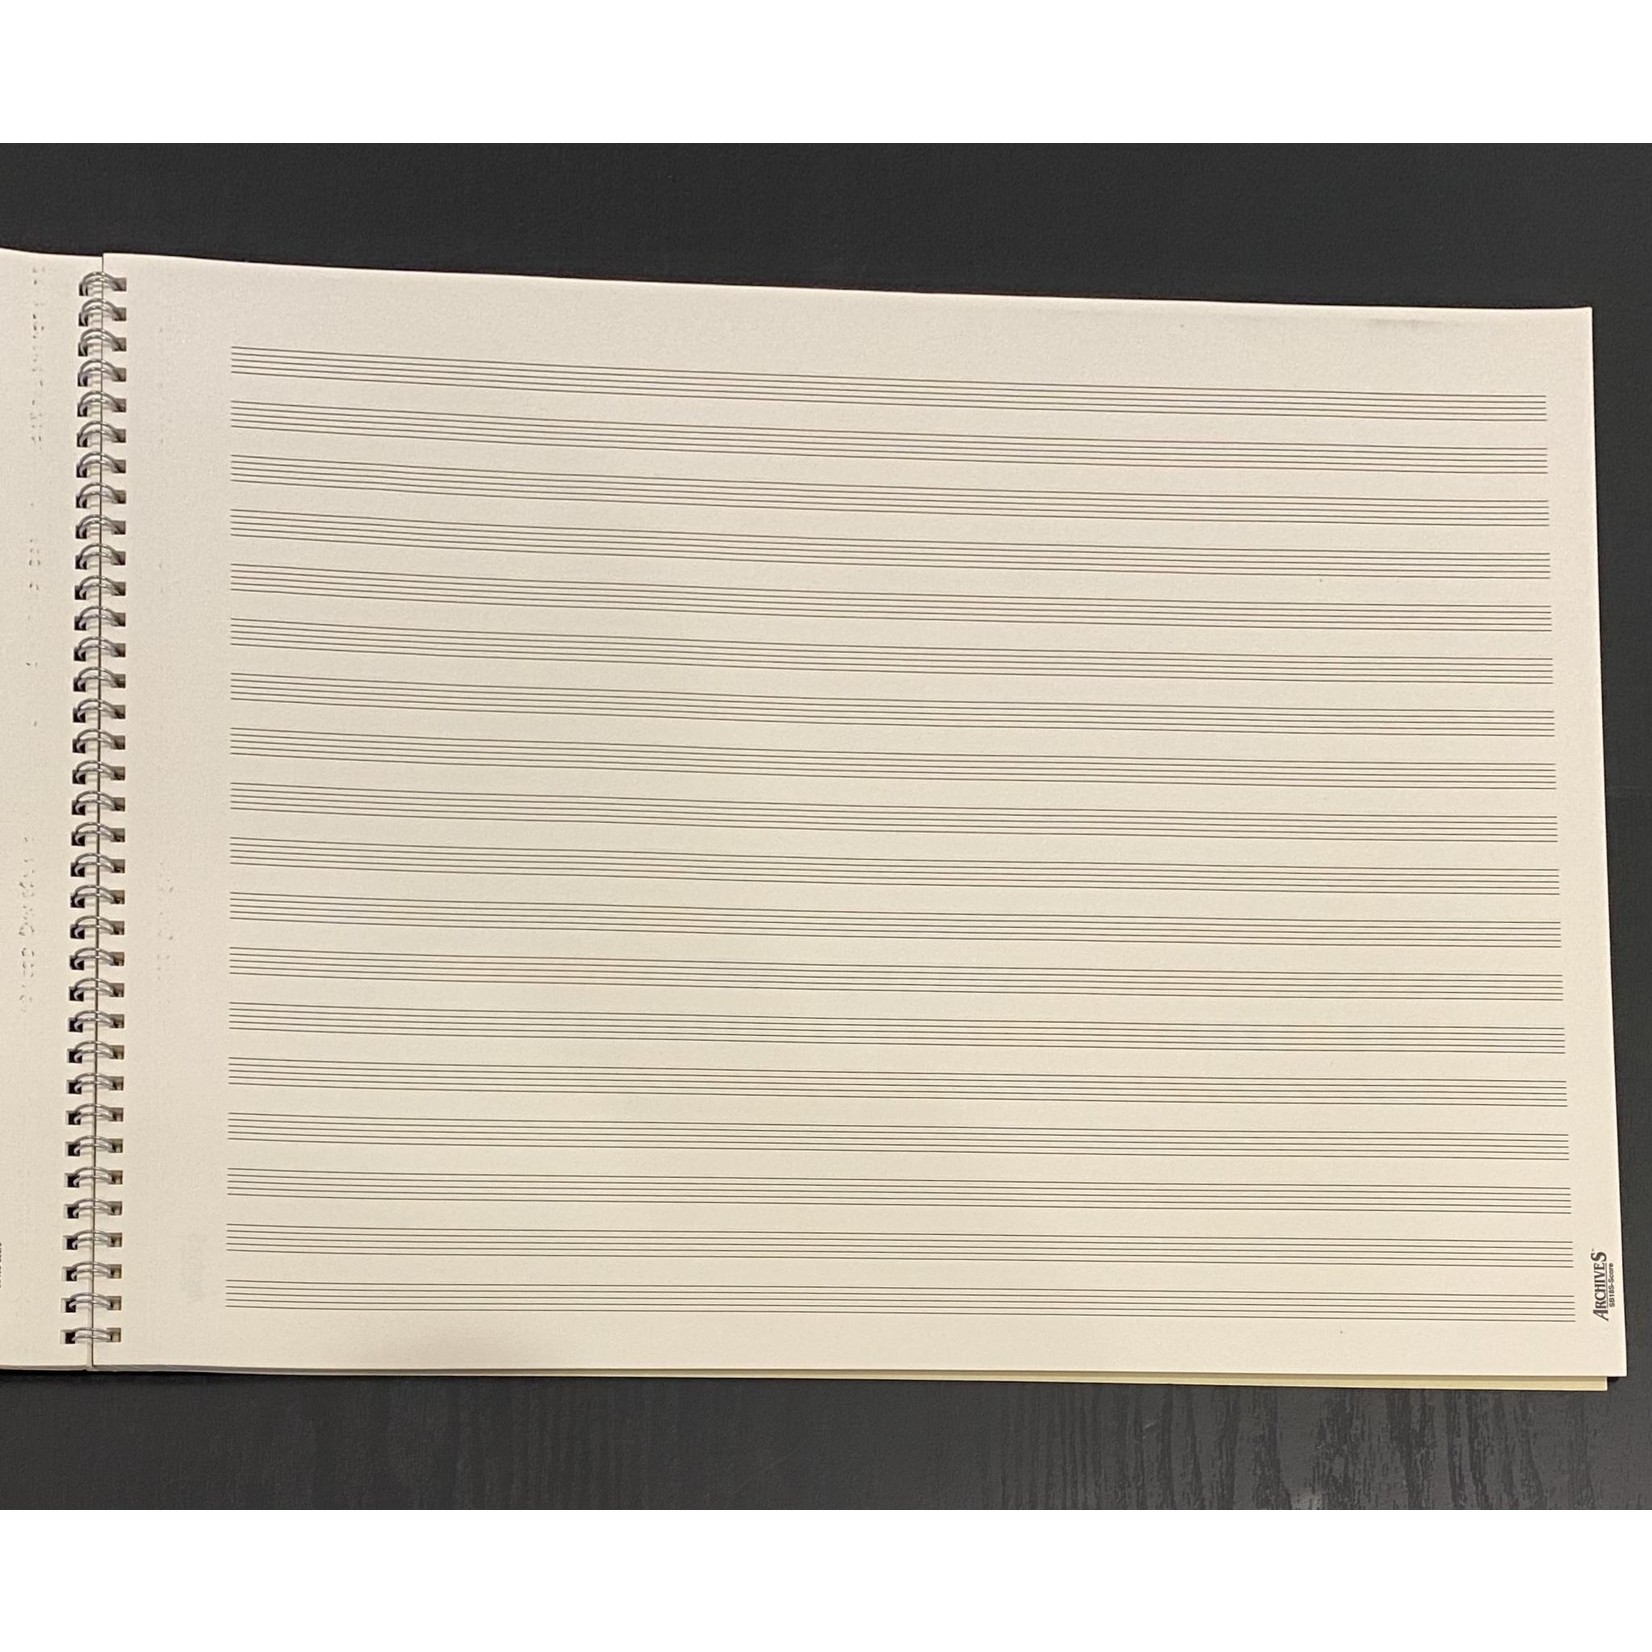 Manuscript: Archives Orchestral Pad 18st/64pg landscape (16"x12")